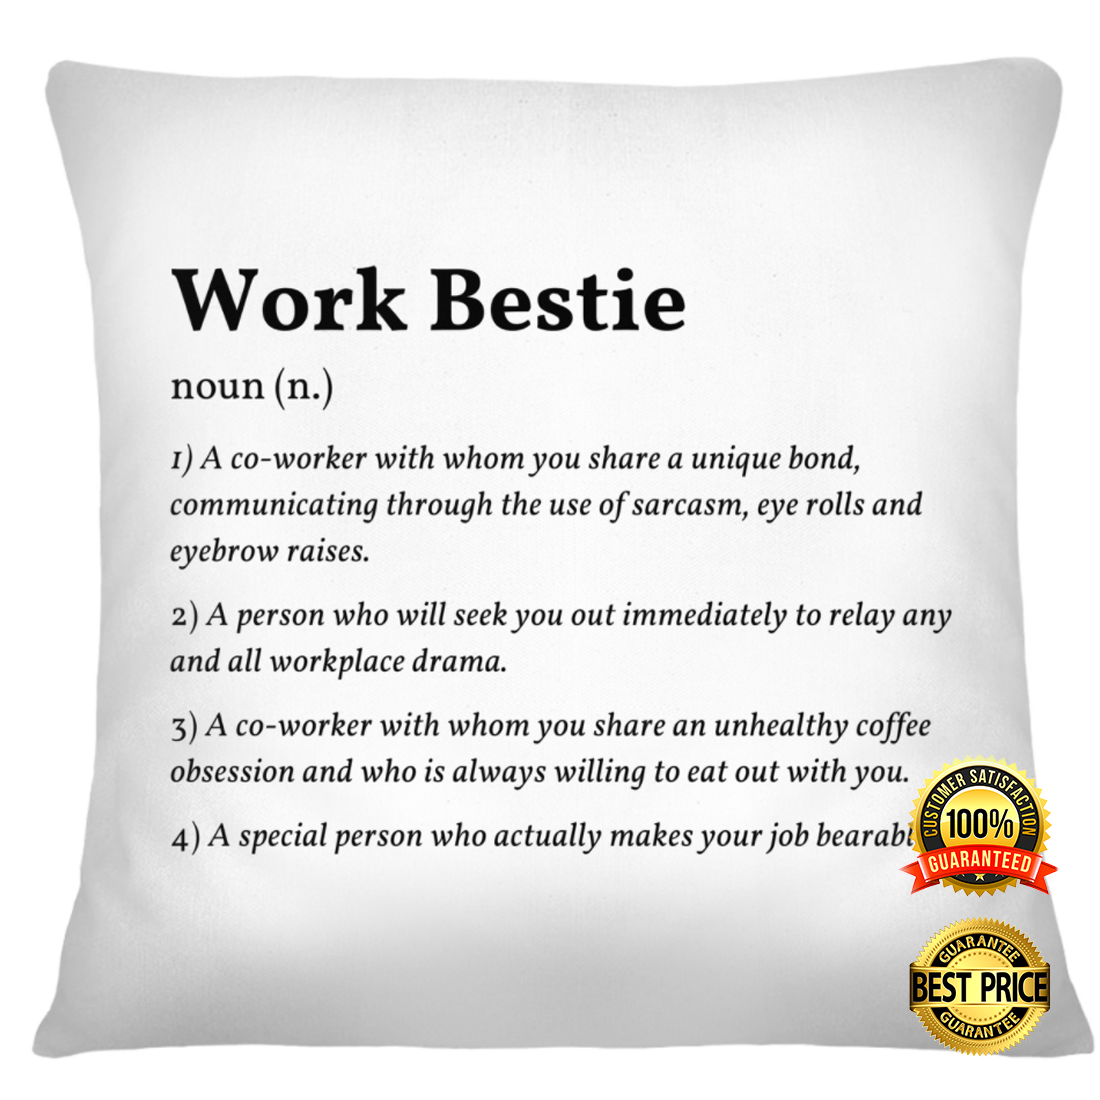 Work bestie definition pillowcase